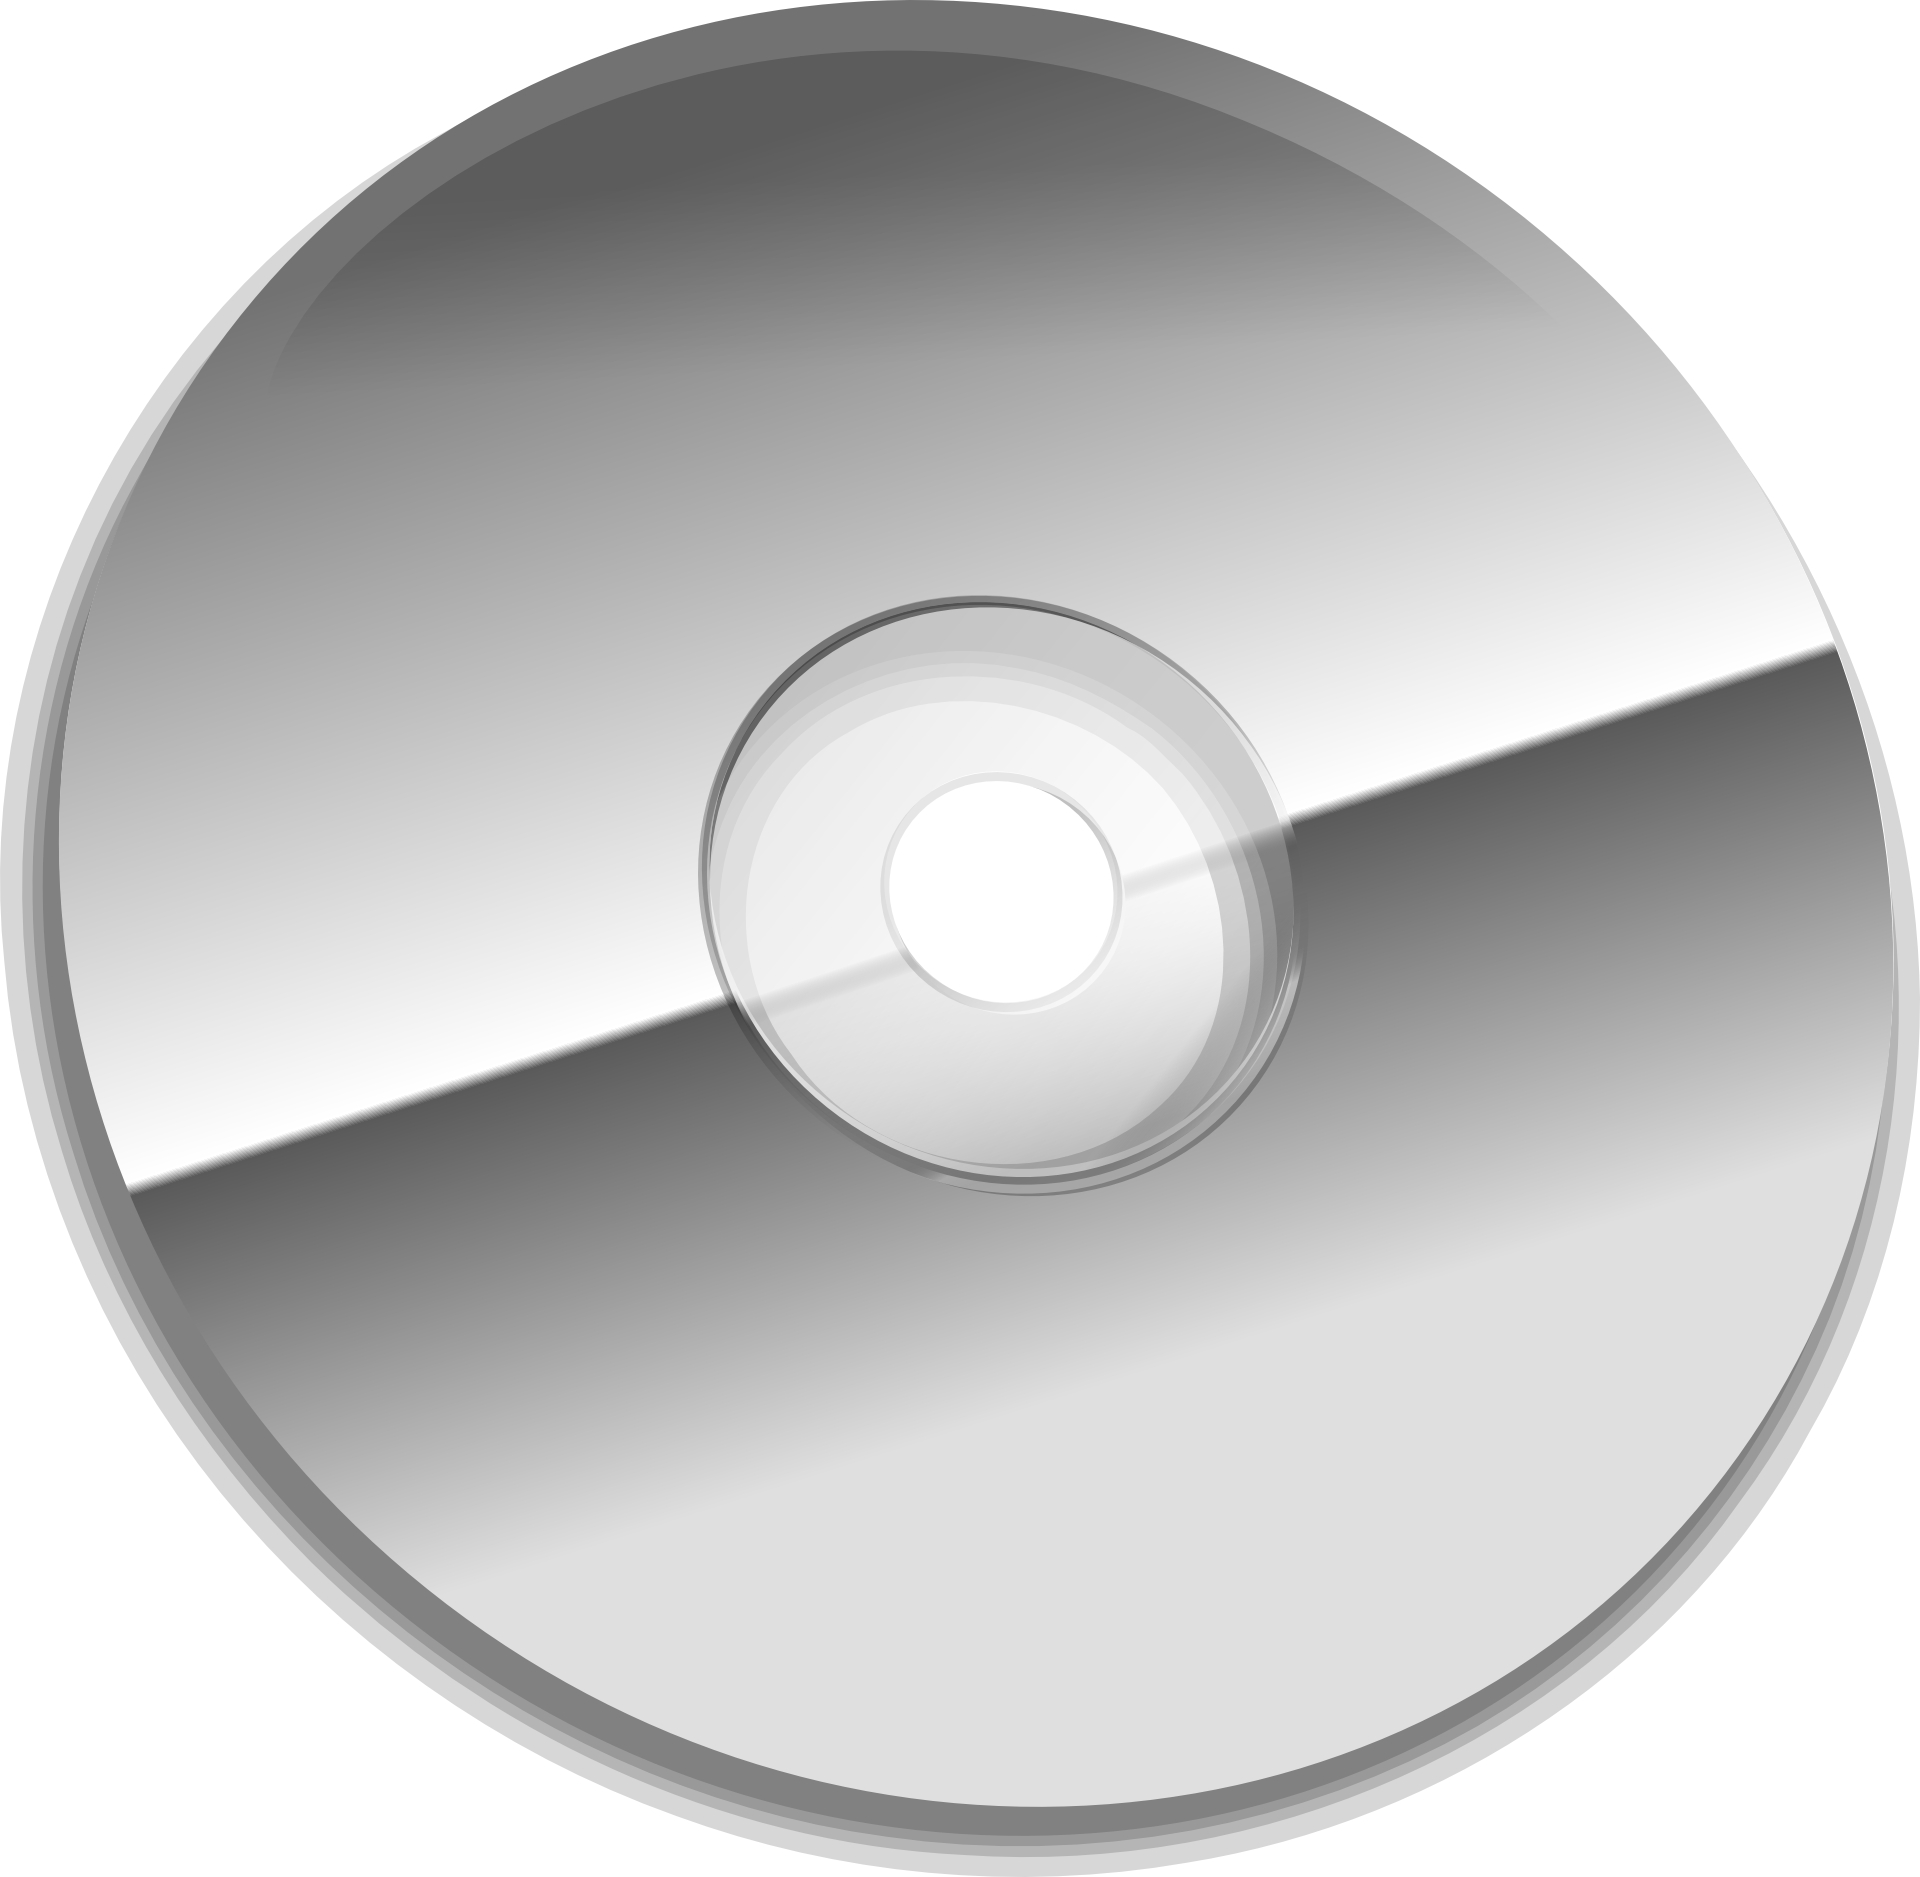 Gray dvd disk vector